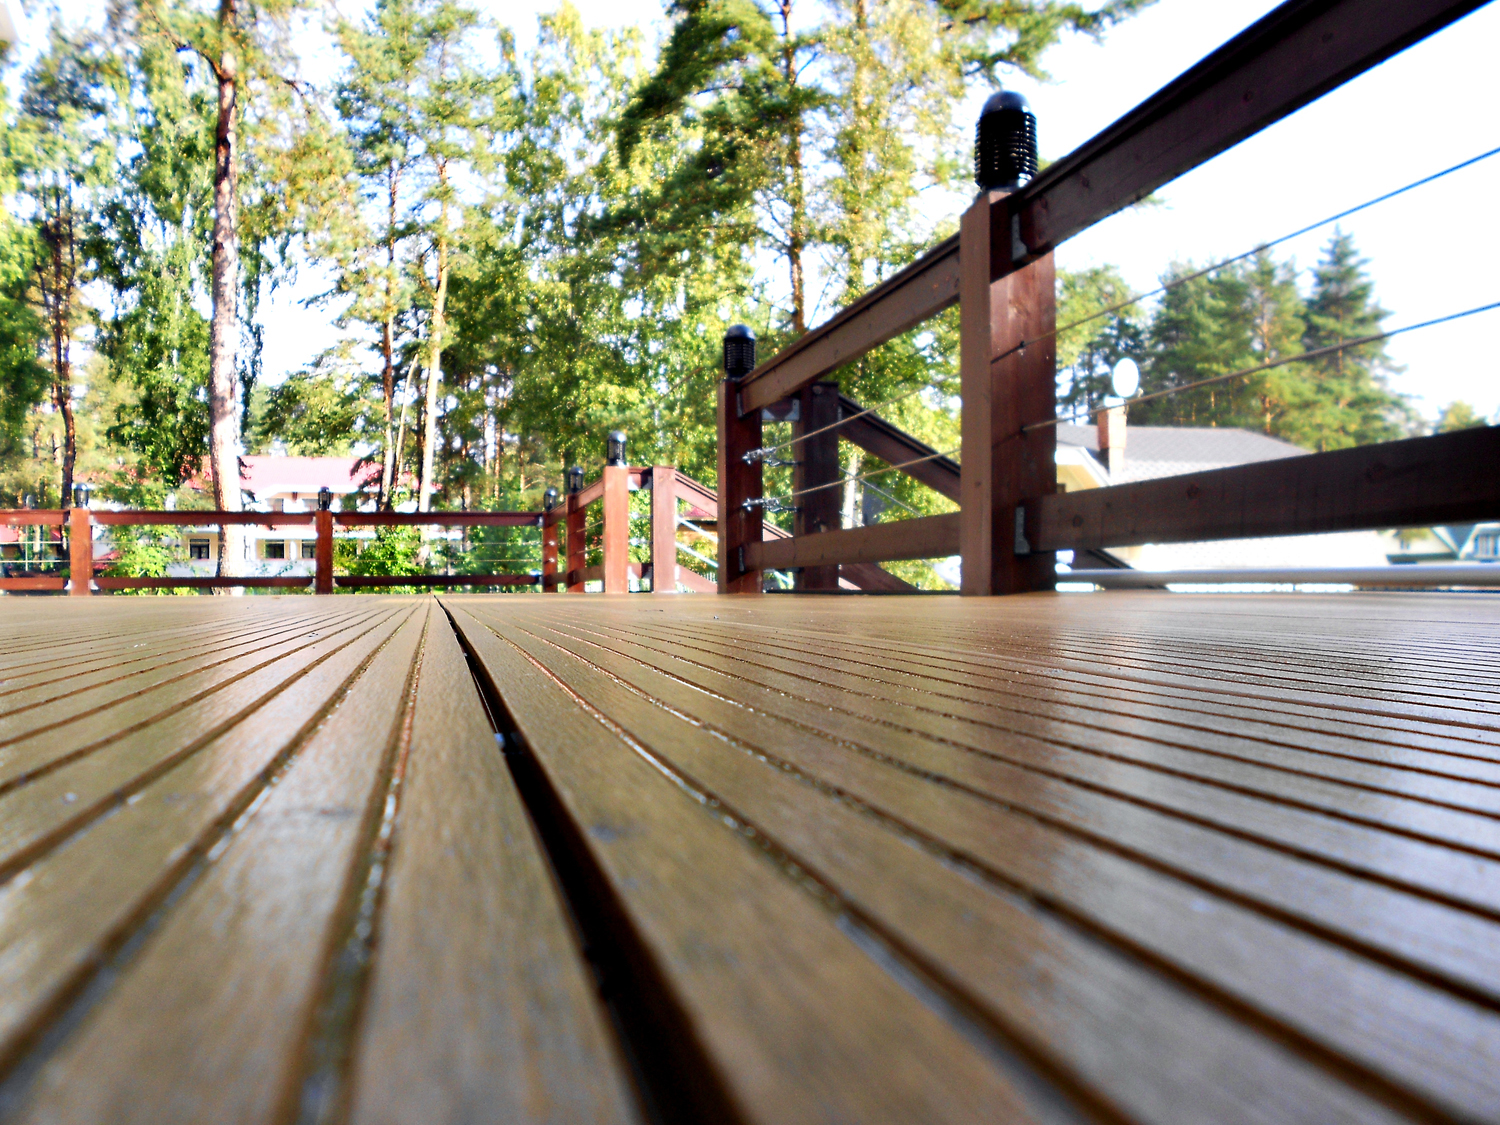 New outdoor wood deck